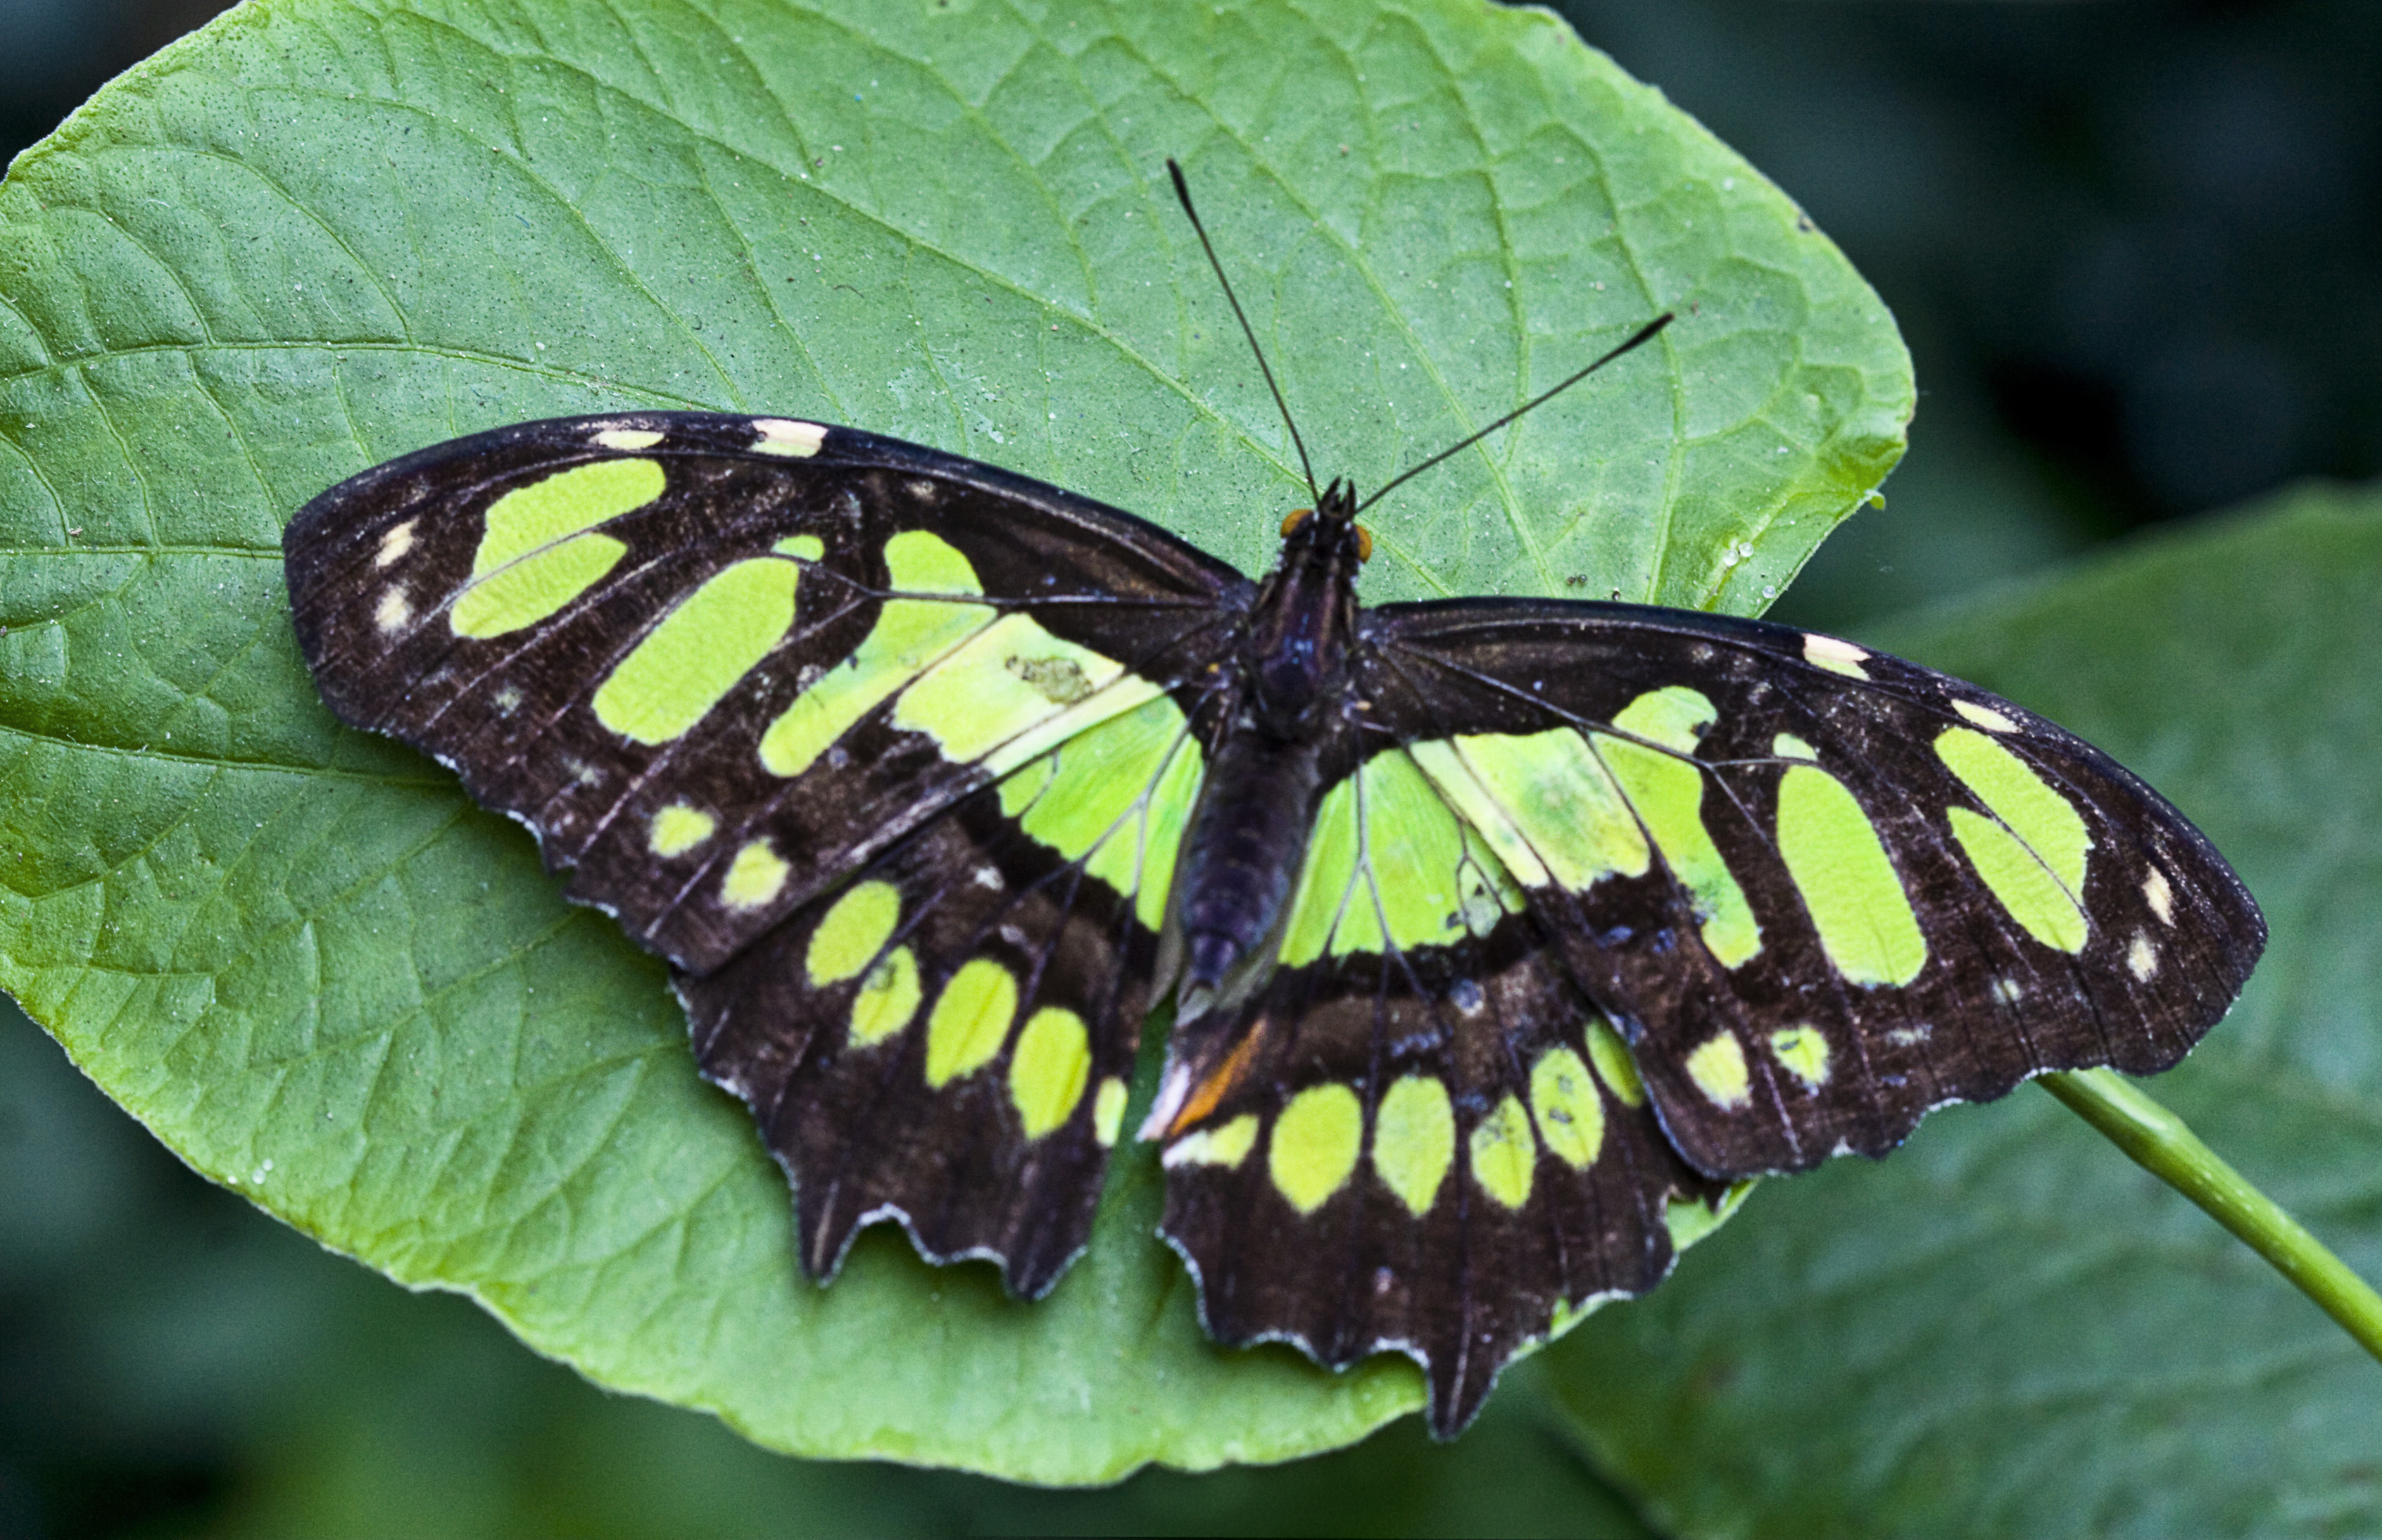 File:Green butterfly on green.jpg - Wikimedia Commons